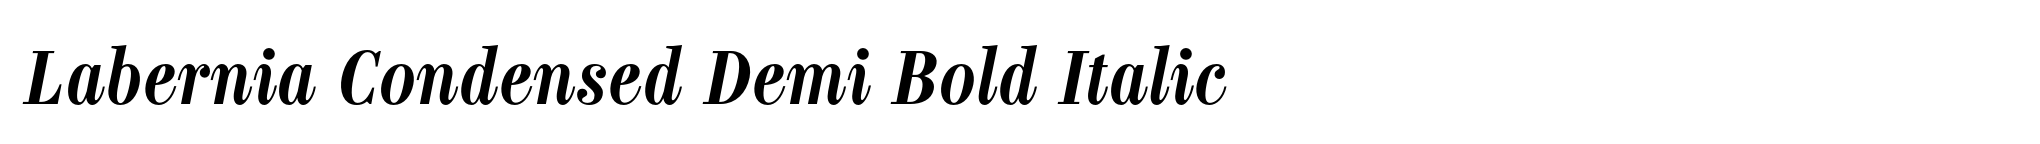 Labernia Condensed Demi Bold Italic image